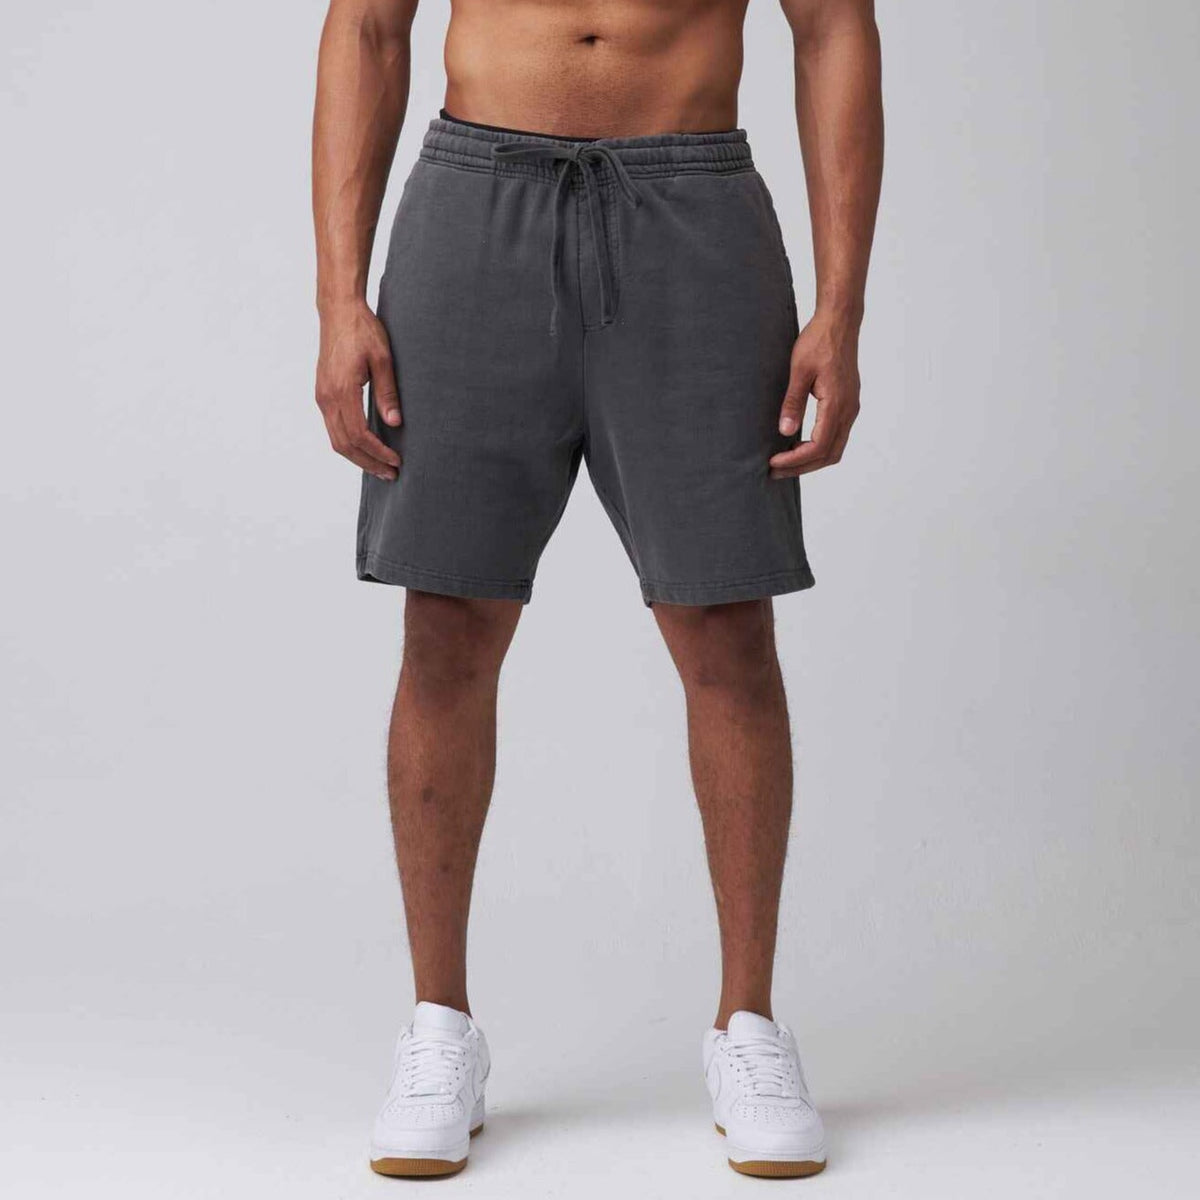 Men's Shorts: A Secret Shorts Lover Comes Clean